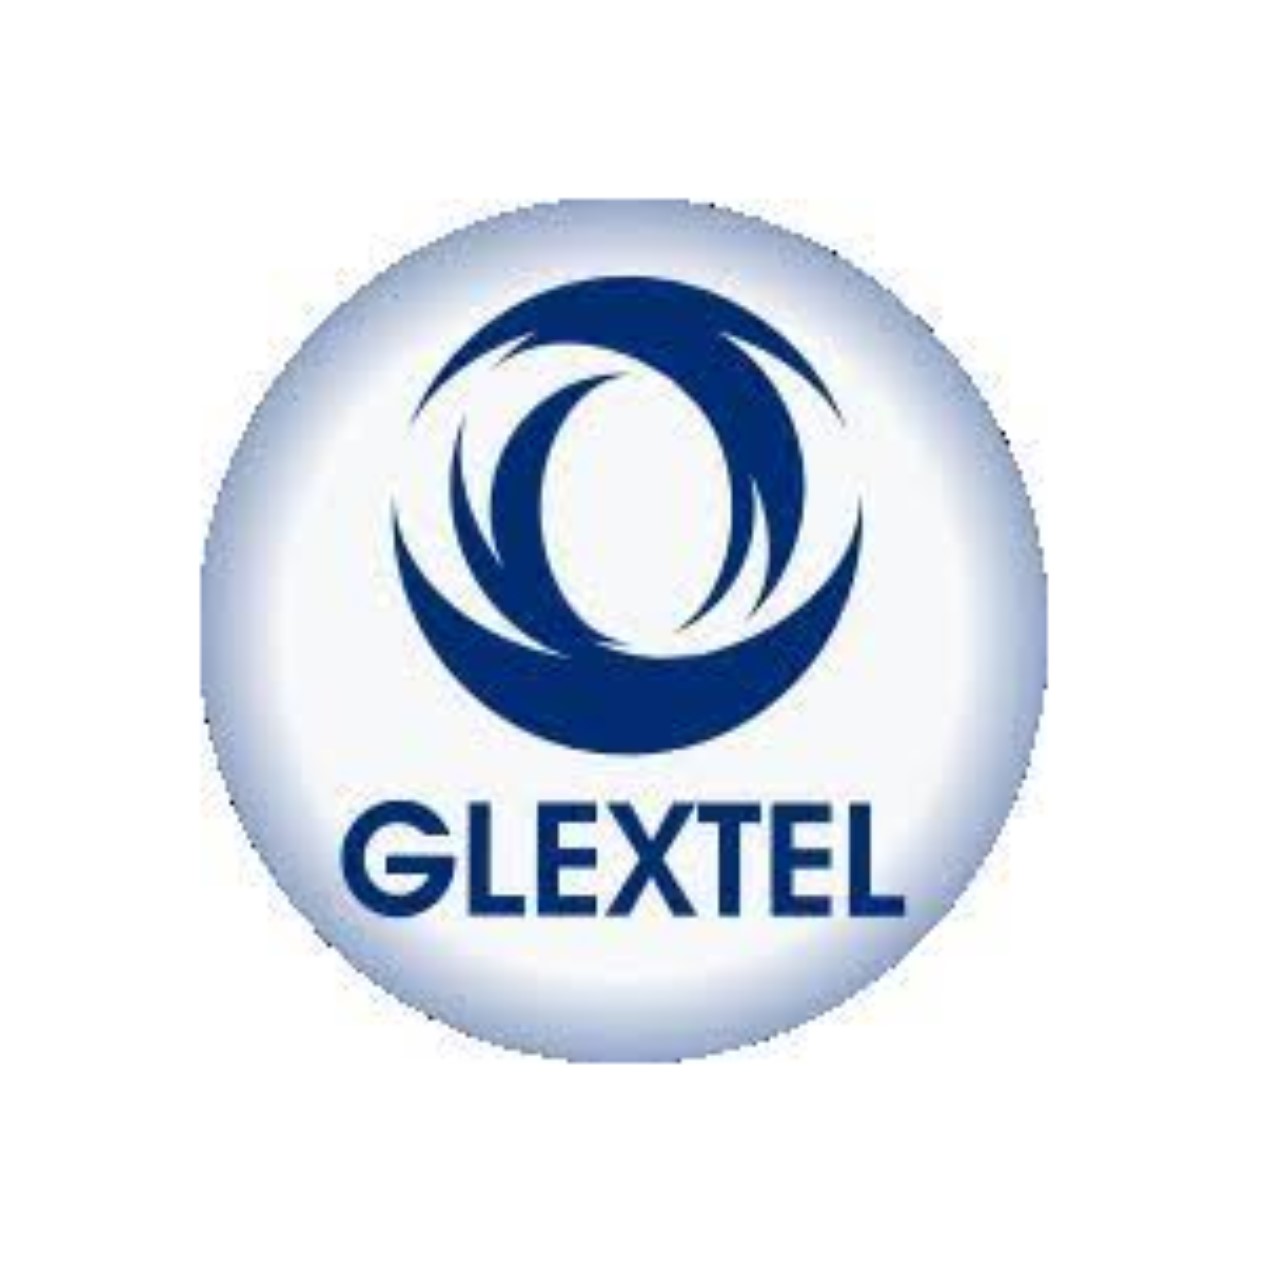 Glextel